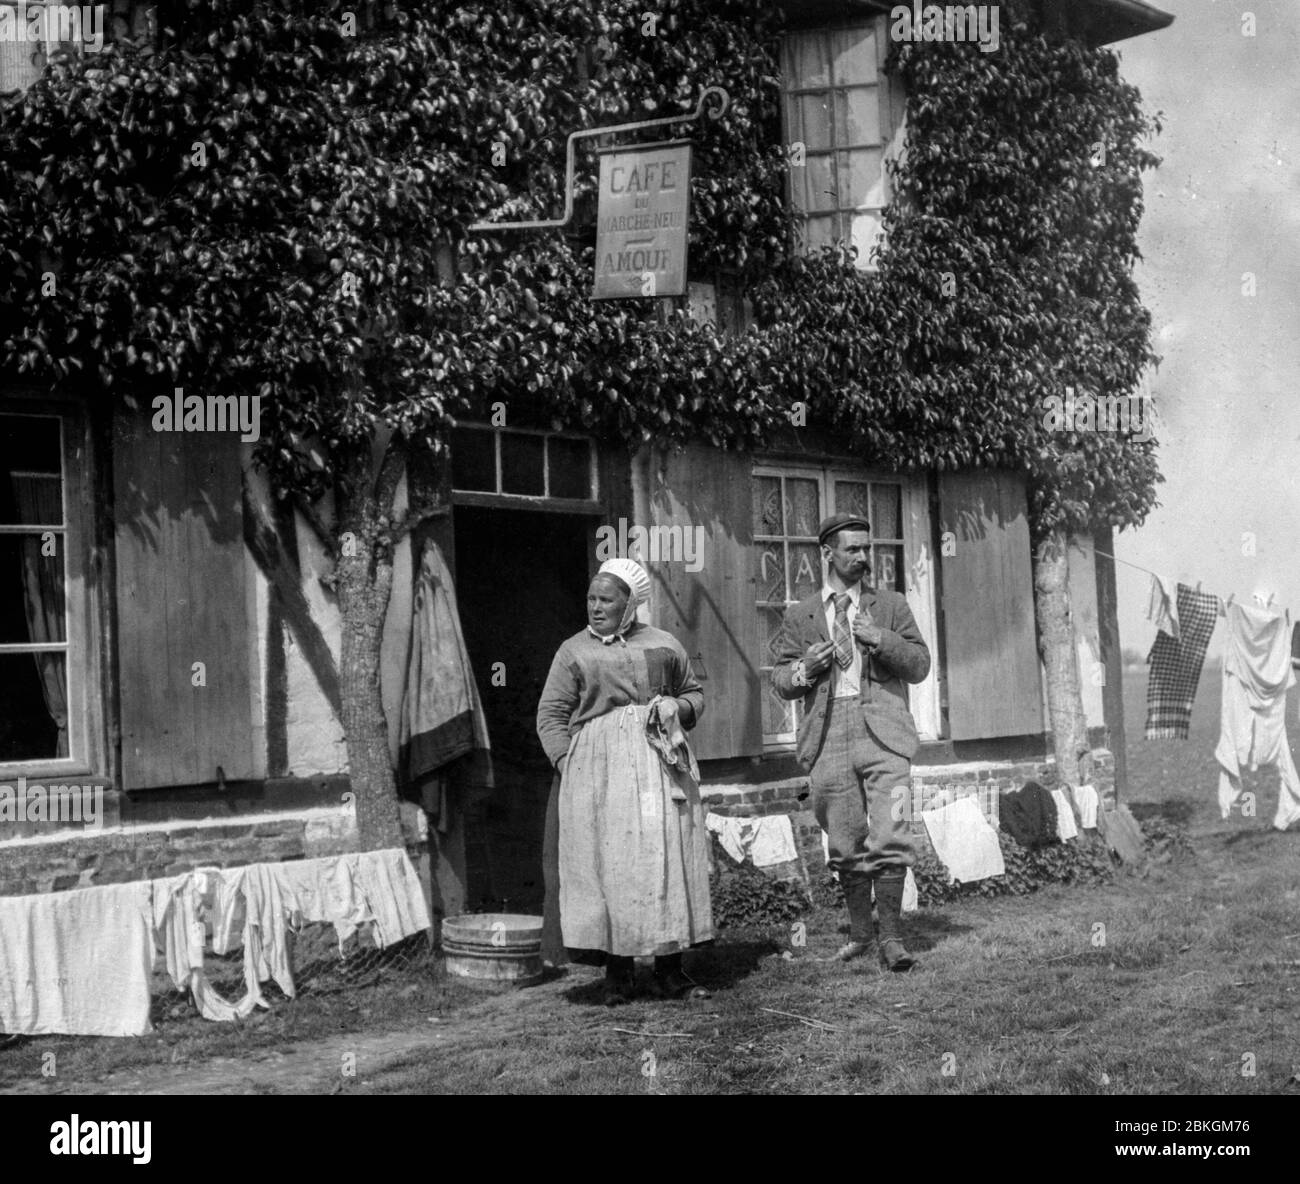 Un homme et une femme français se tiennent devant le café Amour en Marche-neuf en Normandie, en France dans les années 1890, avec tout leur linge séchant sur les lignes. Banque D'Images